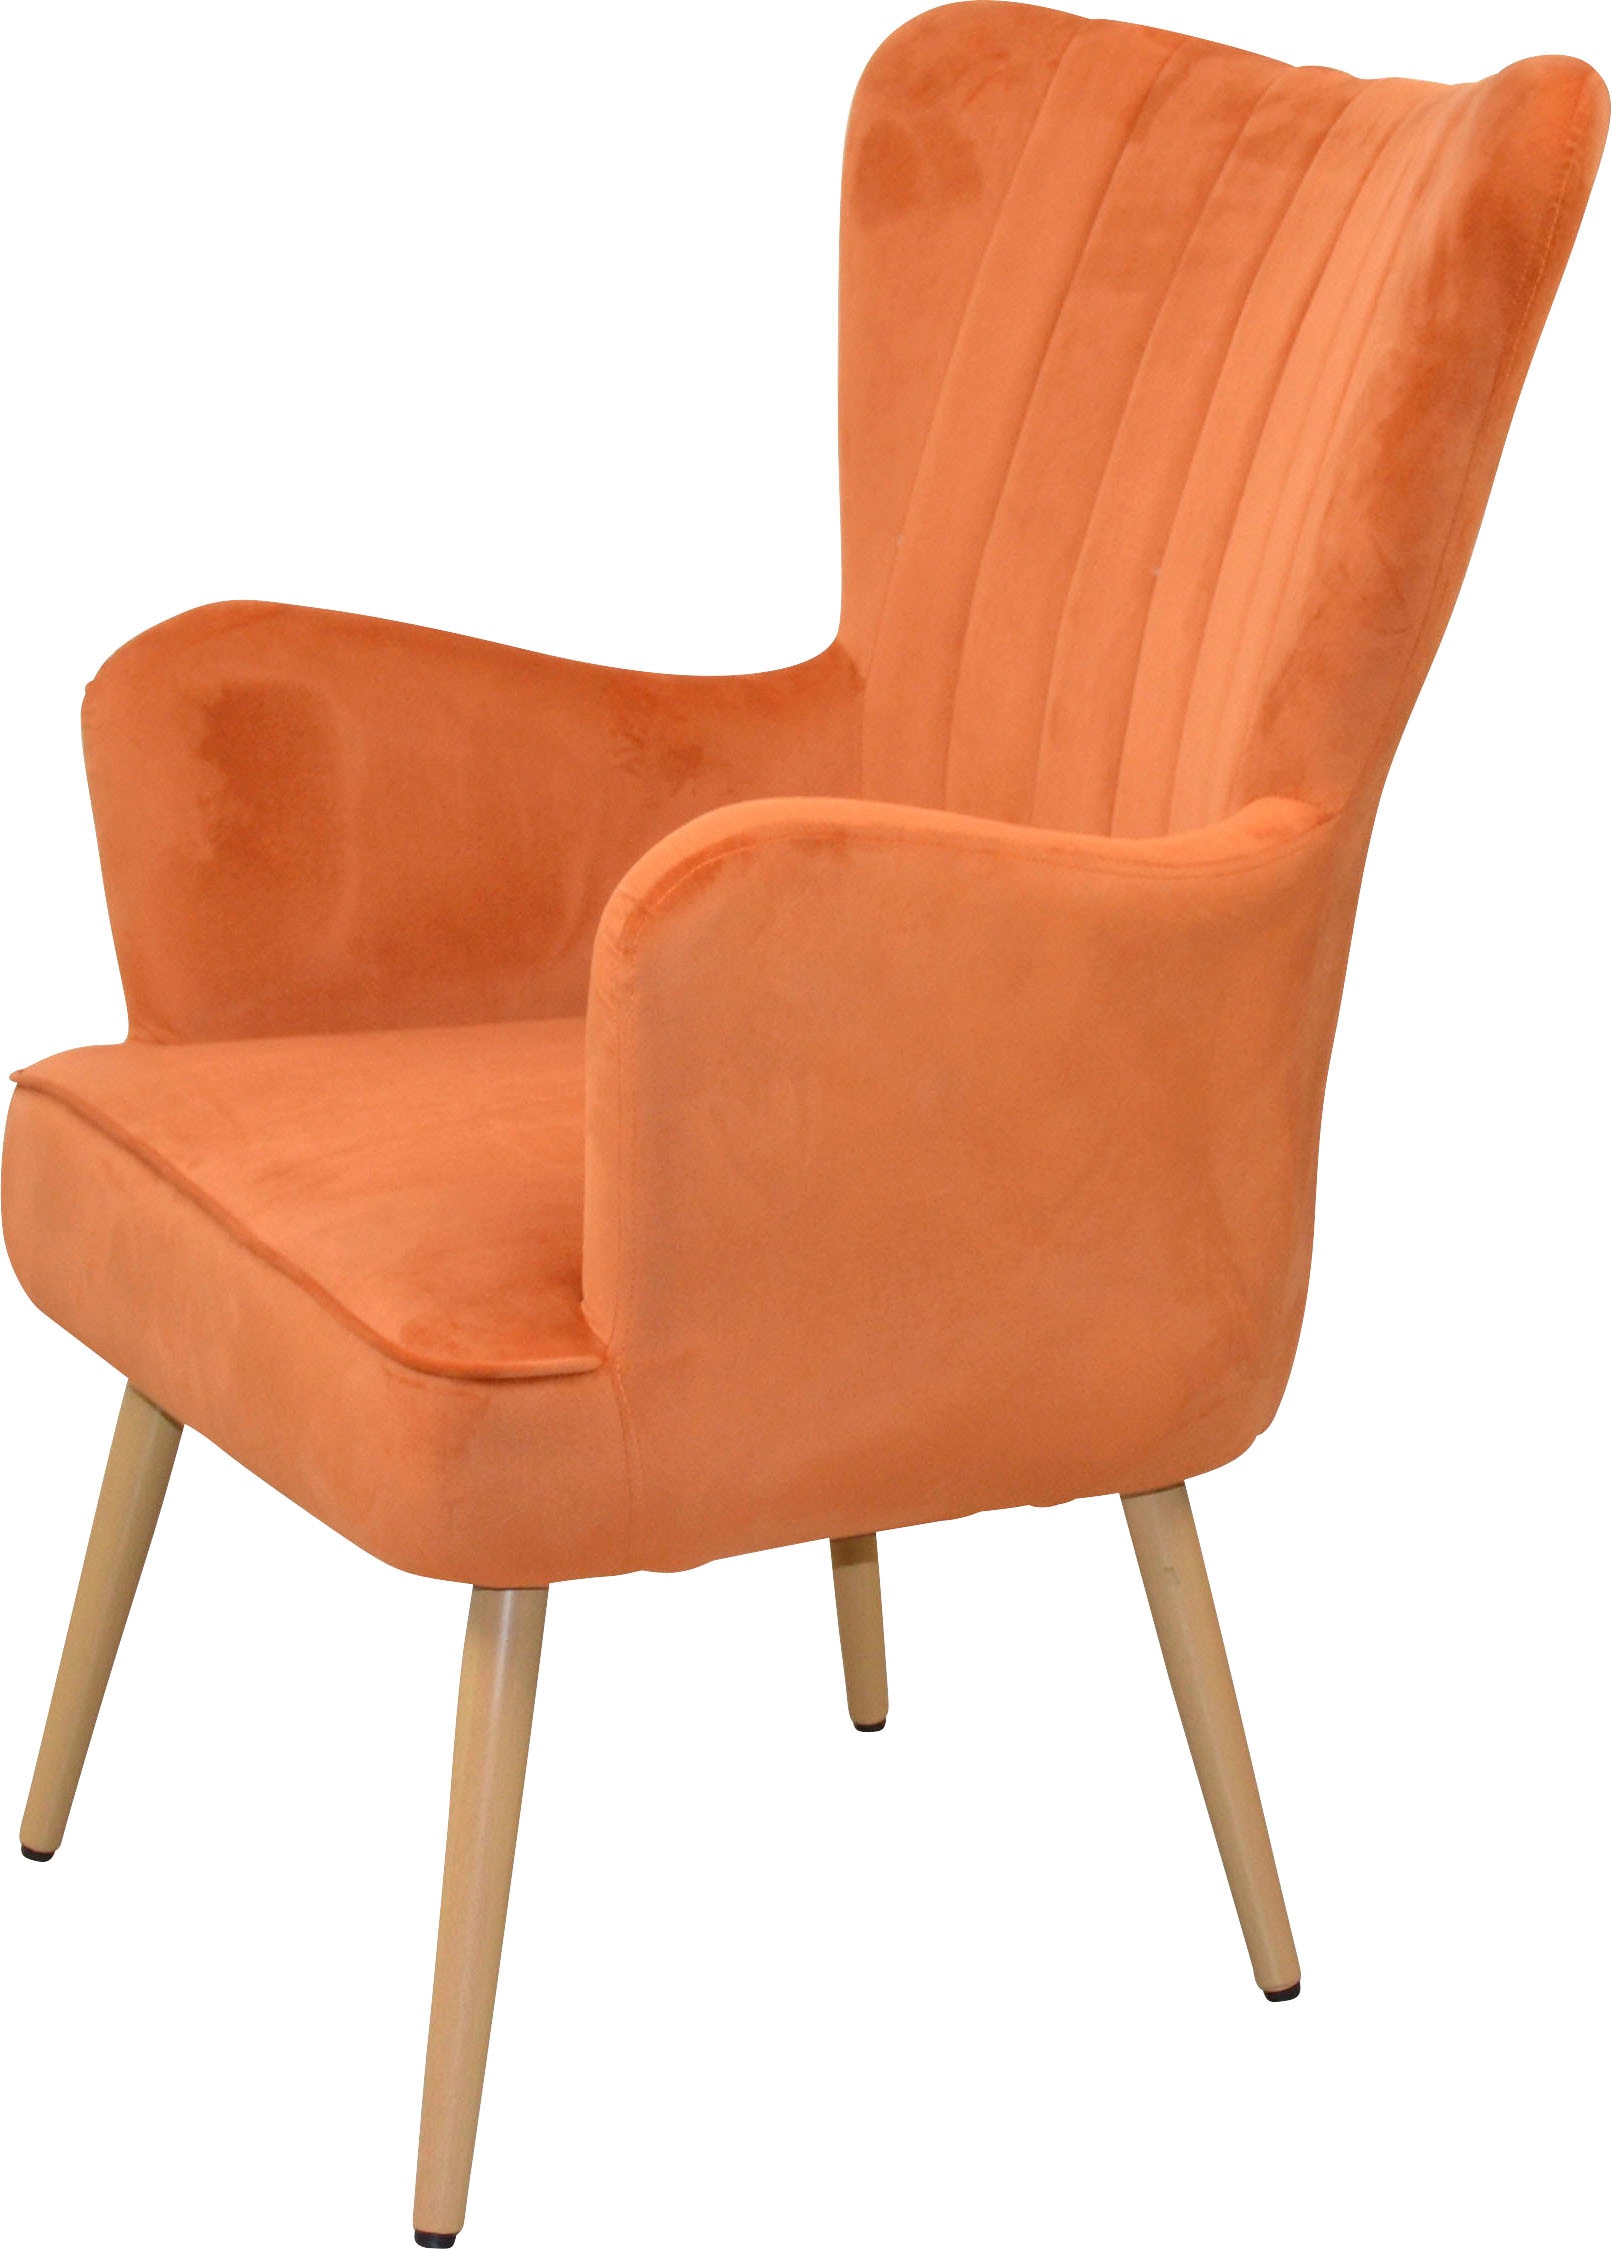 Sessel, Polstersessel mit Beinen aus Stahlrohr, holzfarben natur lackiert